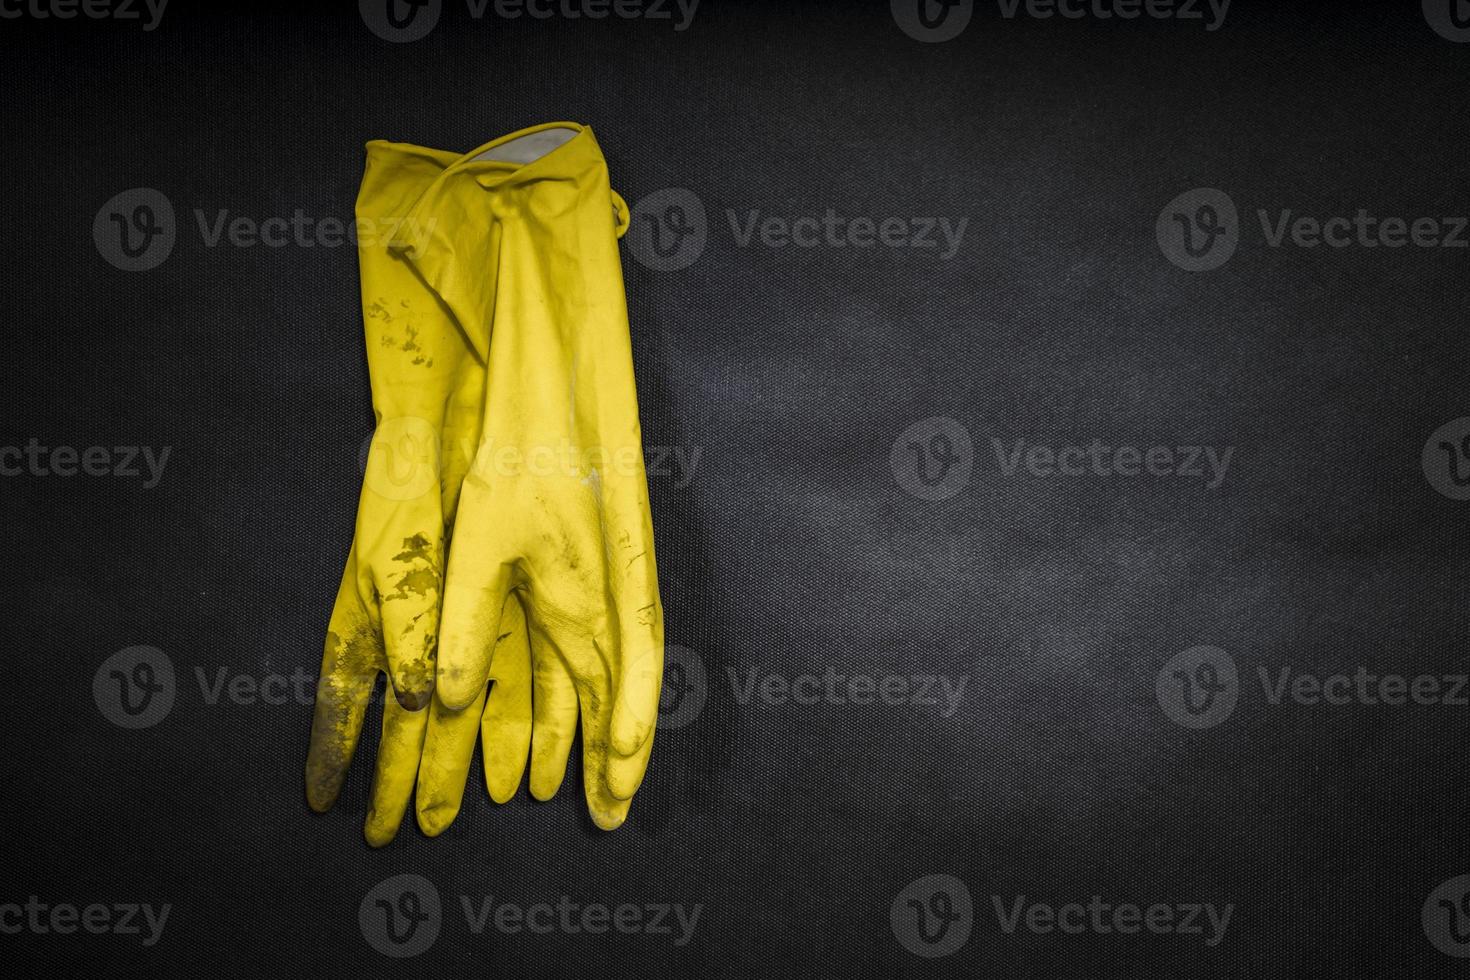 rubberen handschoenen gebruikt voor het reinigen van toilet, zwarte achtergrond foto